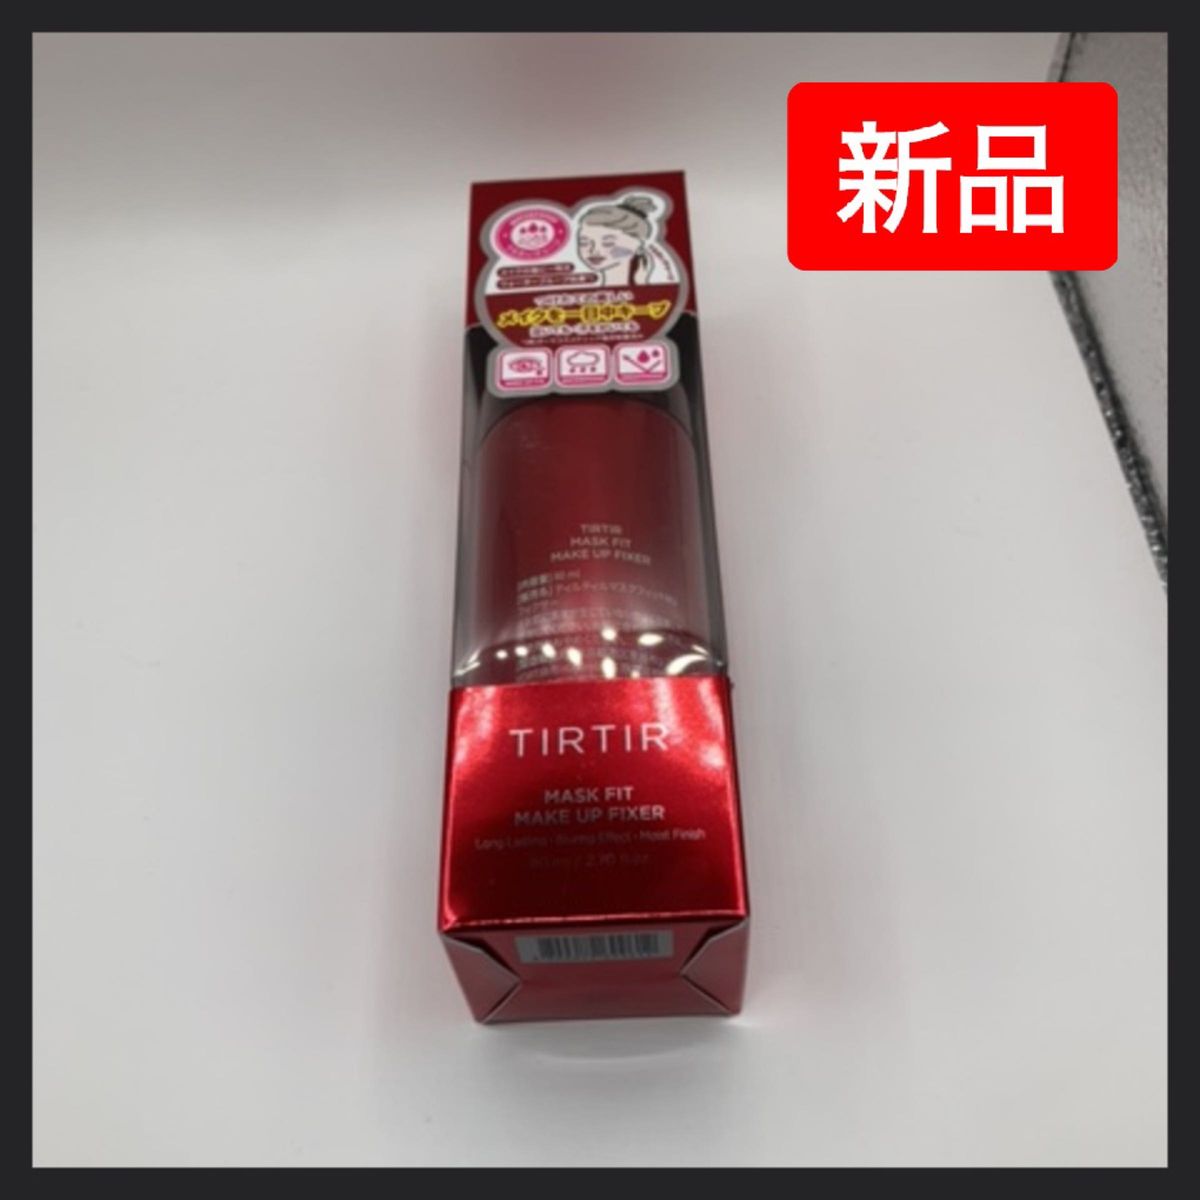 【新品】TIRTIR マスクフィットメイクアップフィクサー メイクキープミスト